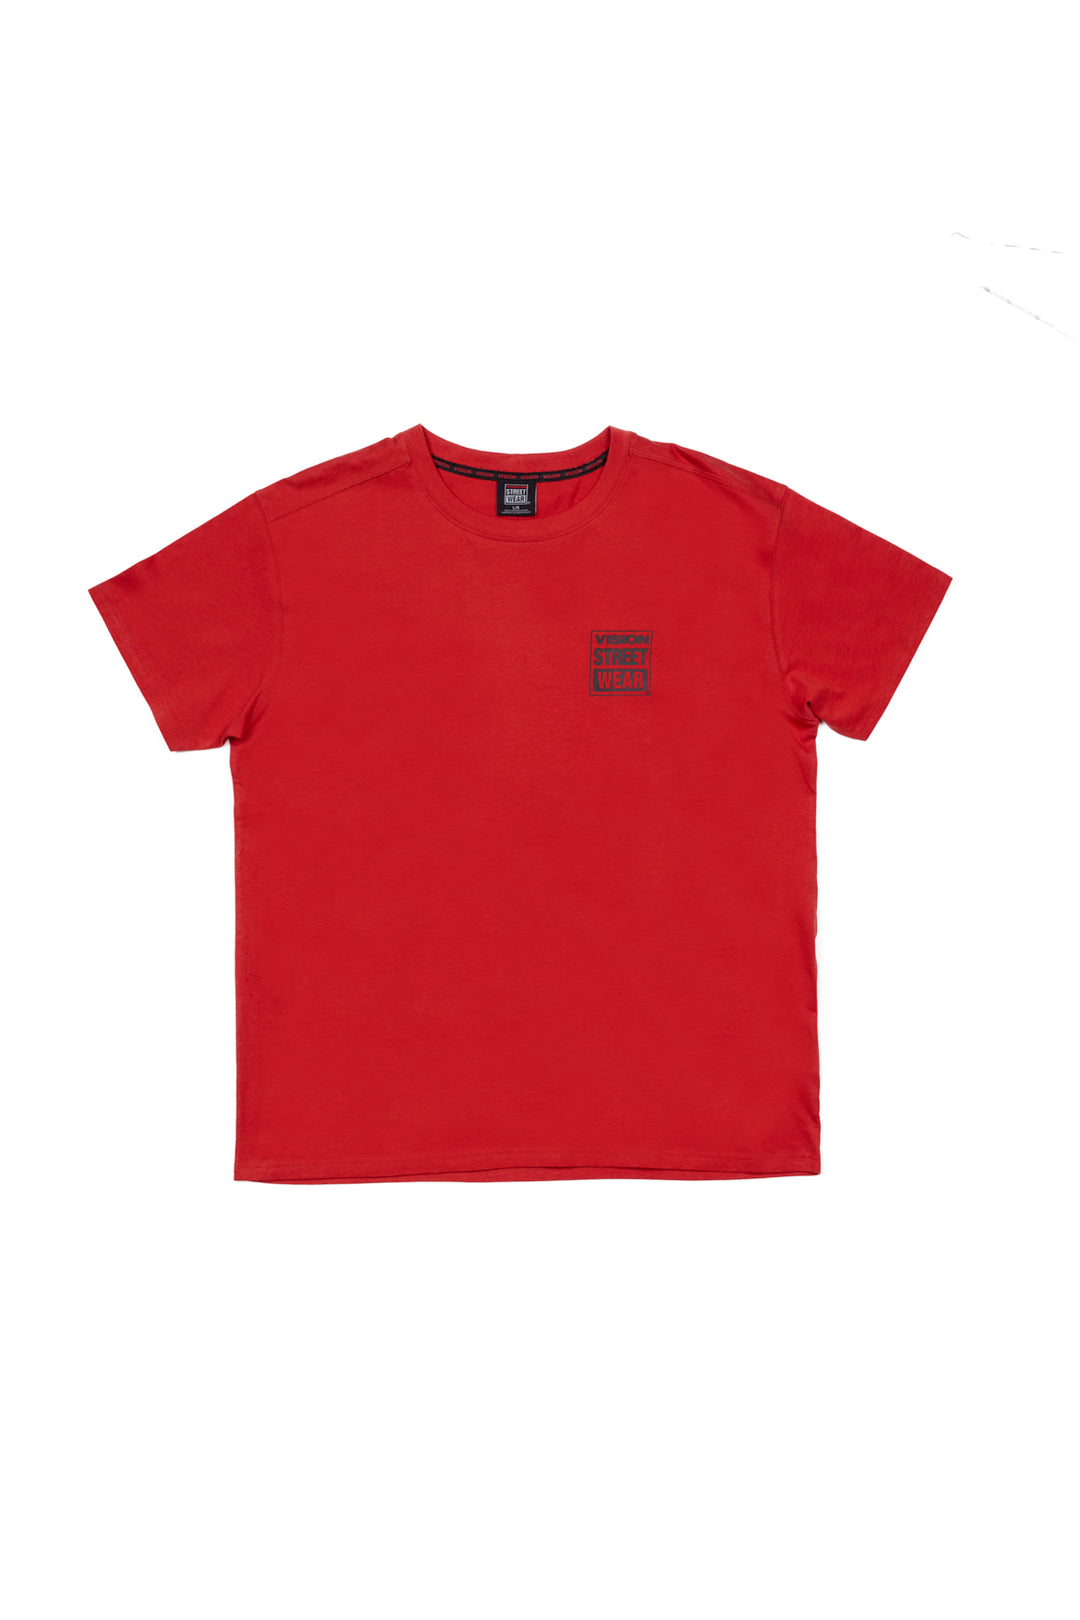 Safety Pin Logo T-Shirt- Red